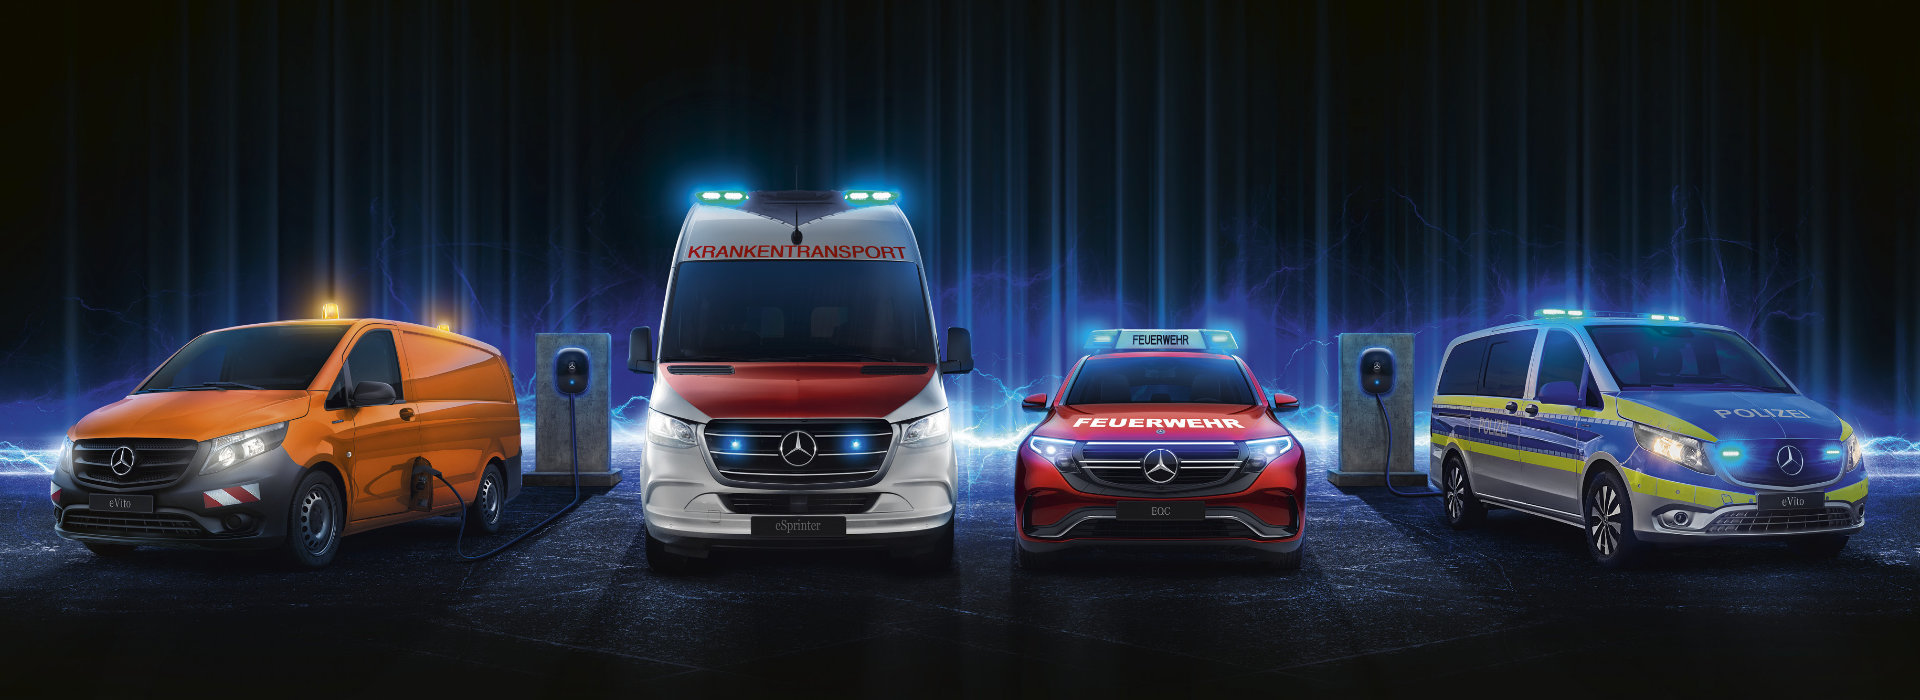 Mercedes-Benz Produktrange Sonderfahrzeuge, Krankentransport, Feuerwehr, Polizei, Baustellenfahrzeug